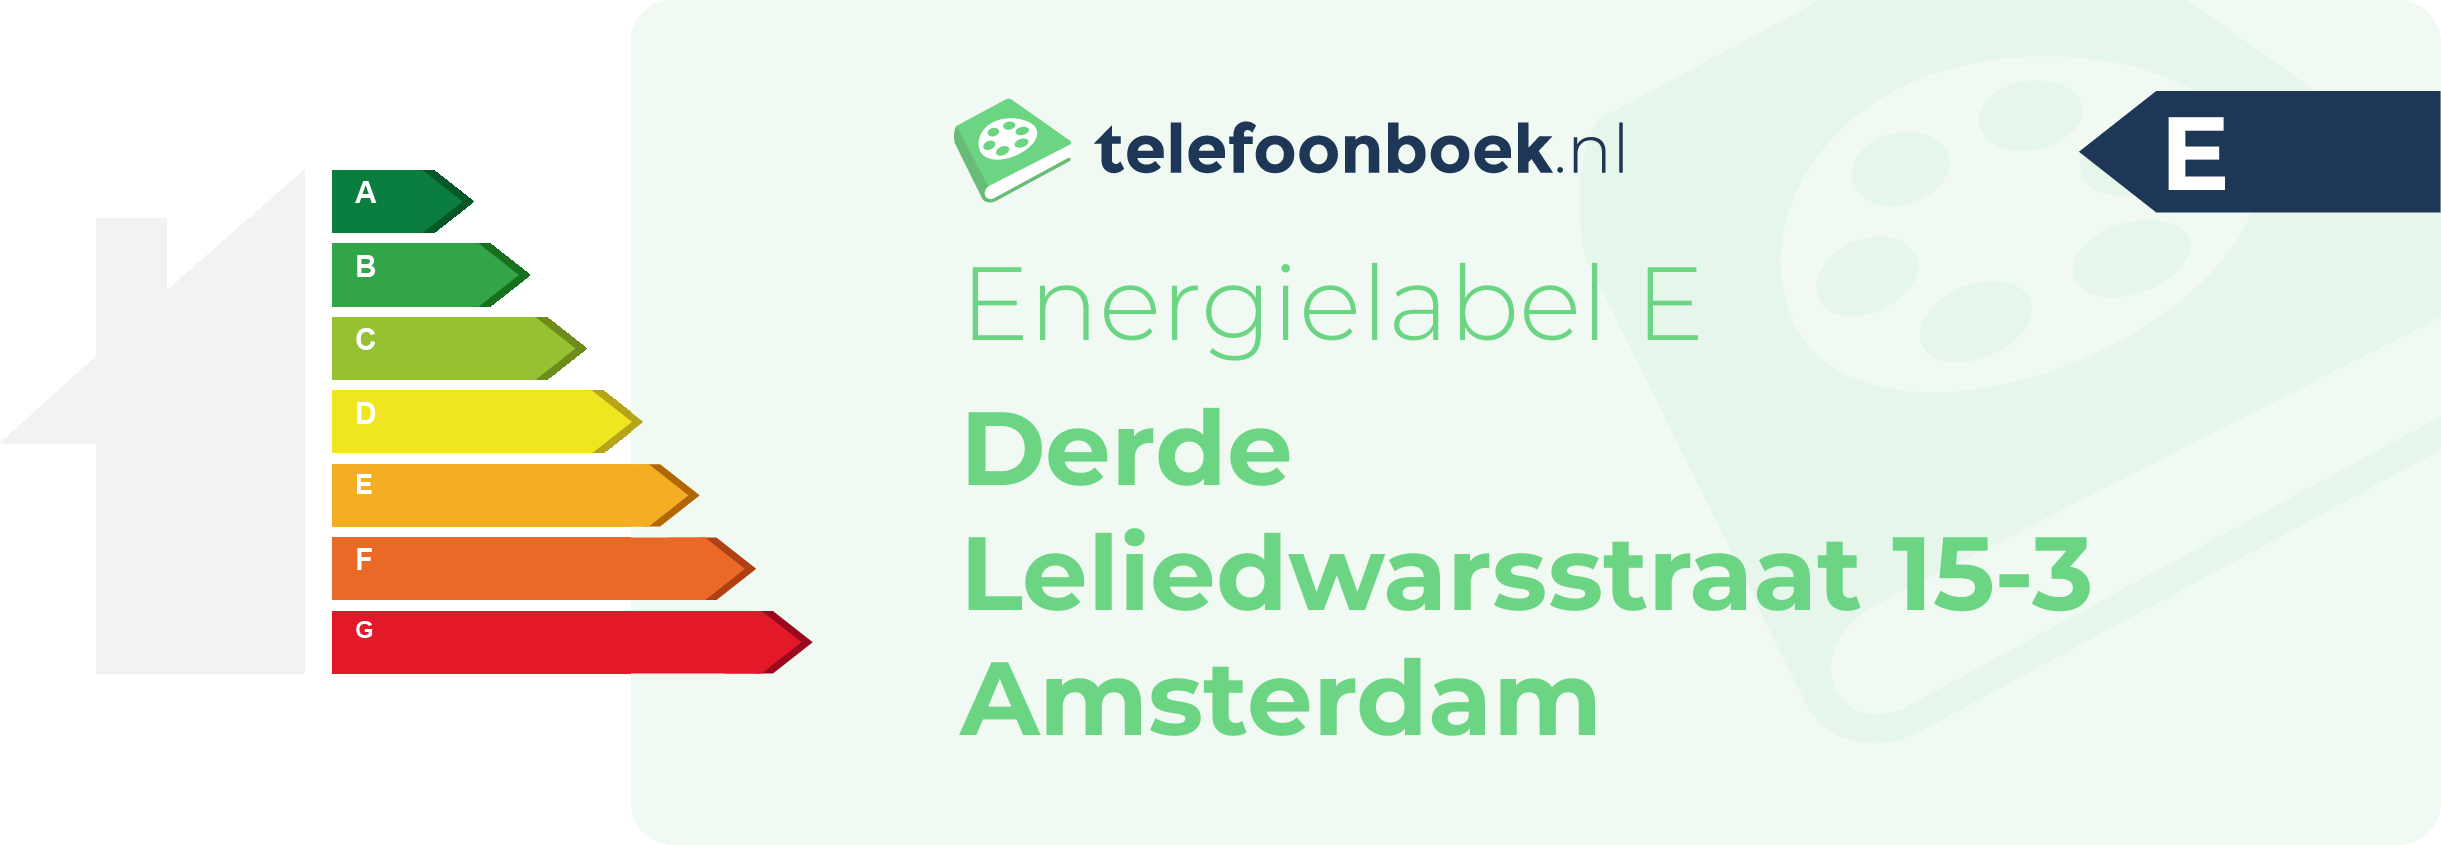 Energielabel Derde Leliedwarsstraat 15-3 Amsterdam